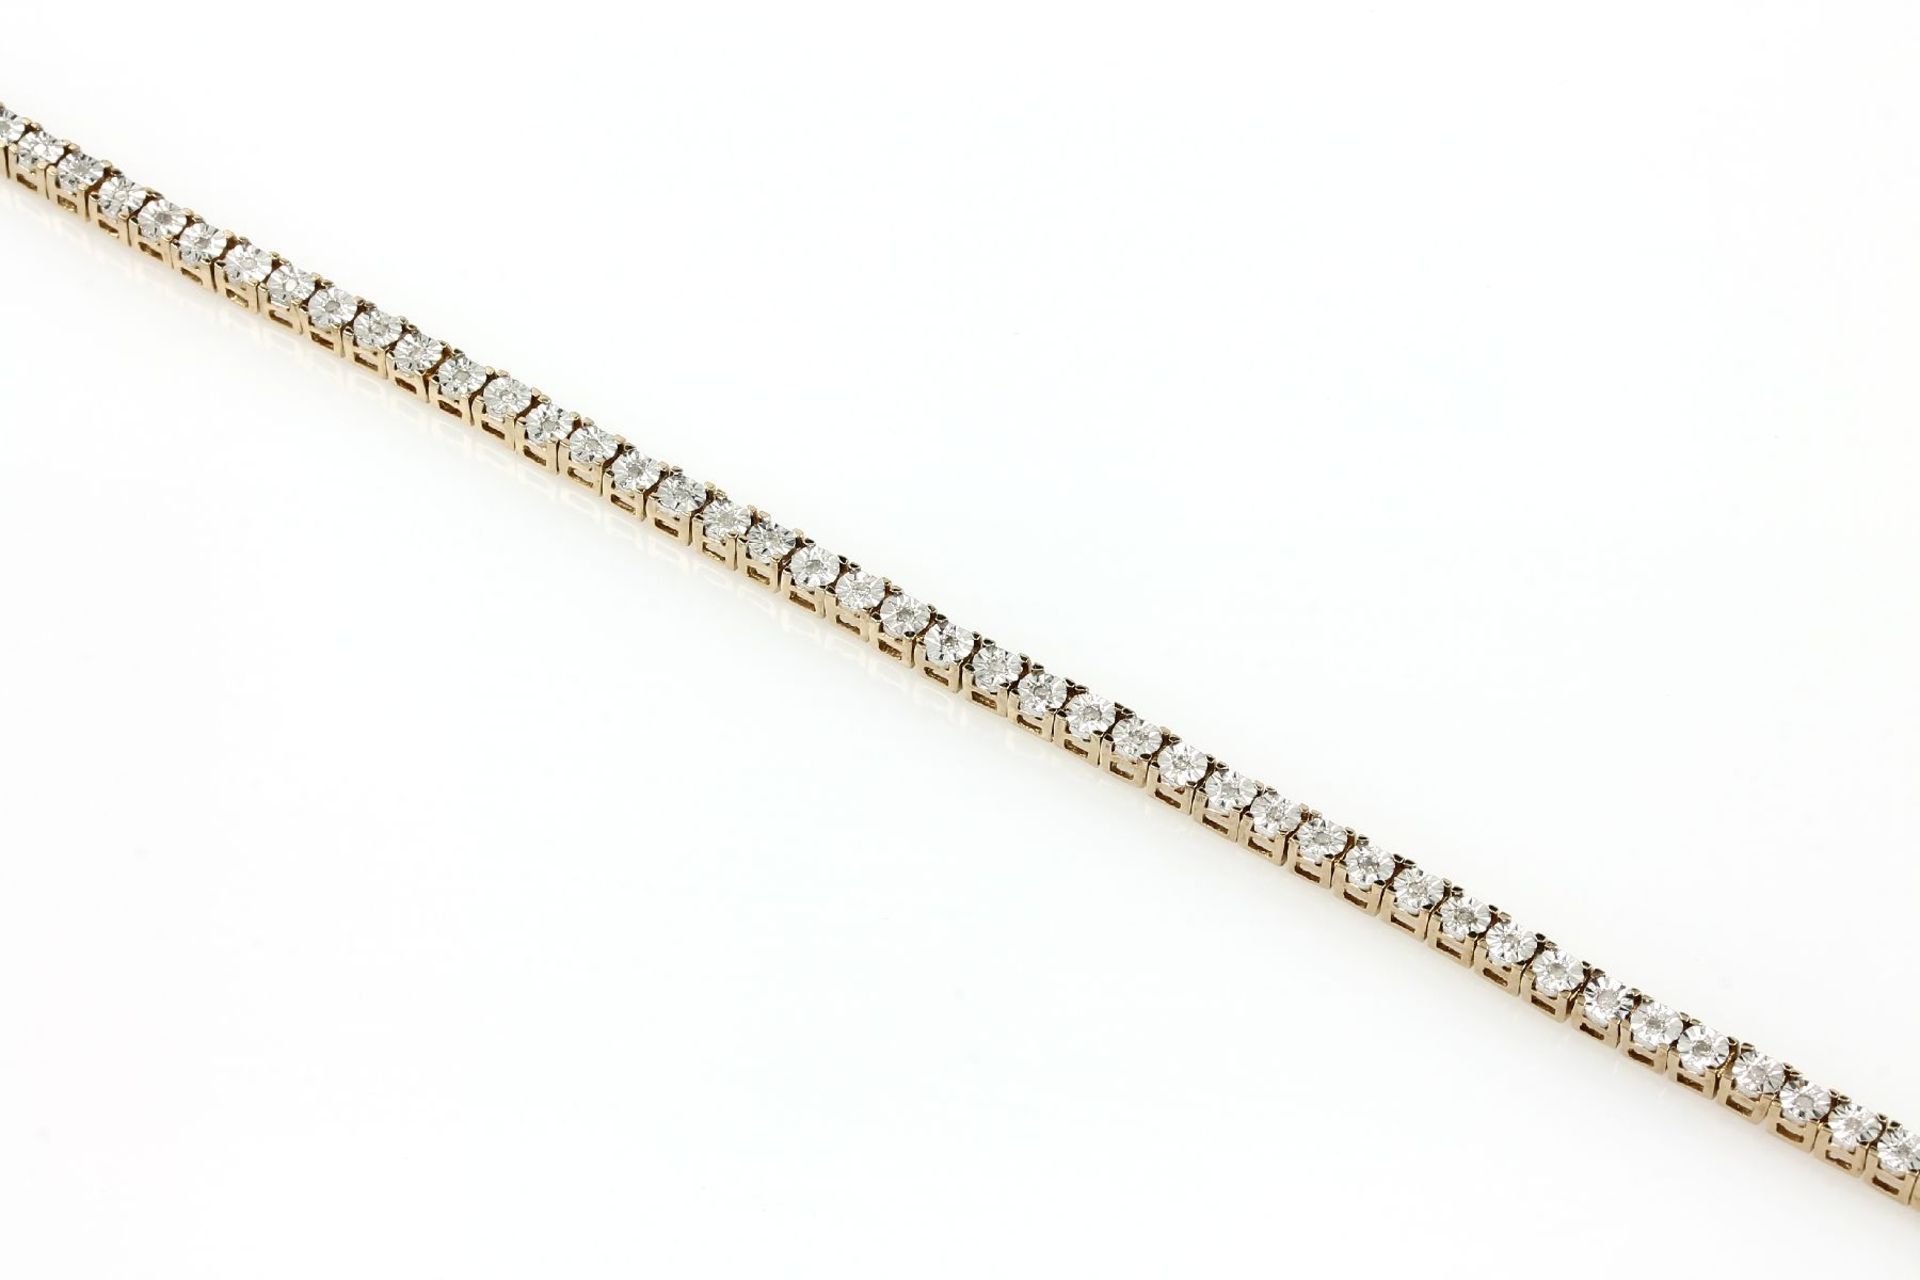 Silber Armband mit Diamanten, 925er Silber teilverg., Diamanten zus. ca. 0.50 ct Weiß/p, L. ca. 20